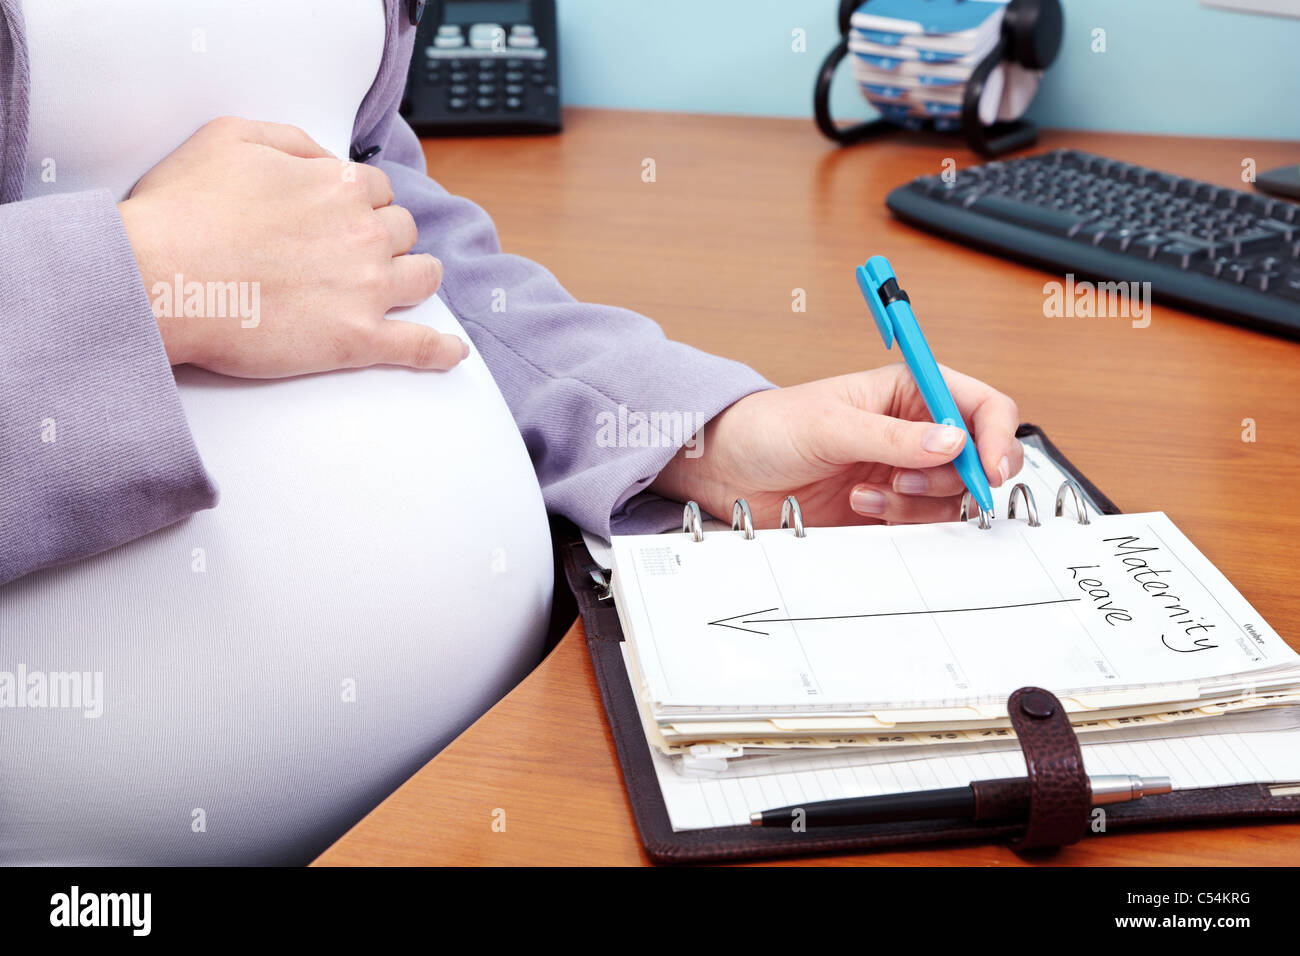 Foto von einer schwangeren Frau in einem Büro die Worte Mutterschaftsurlaub in ihr Tagebuch zu schreiben. Stockfoto